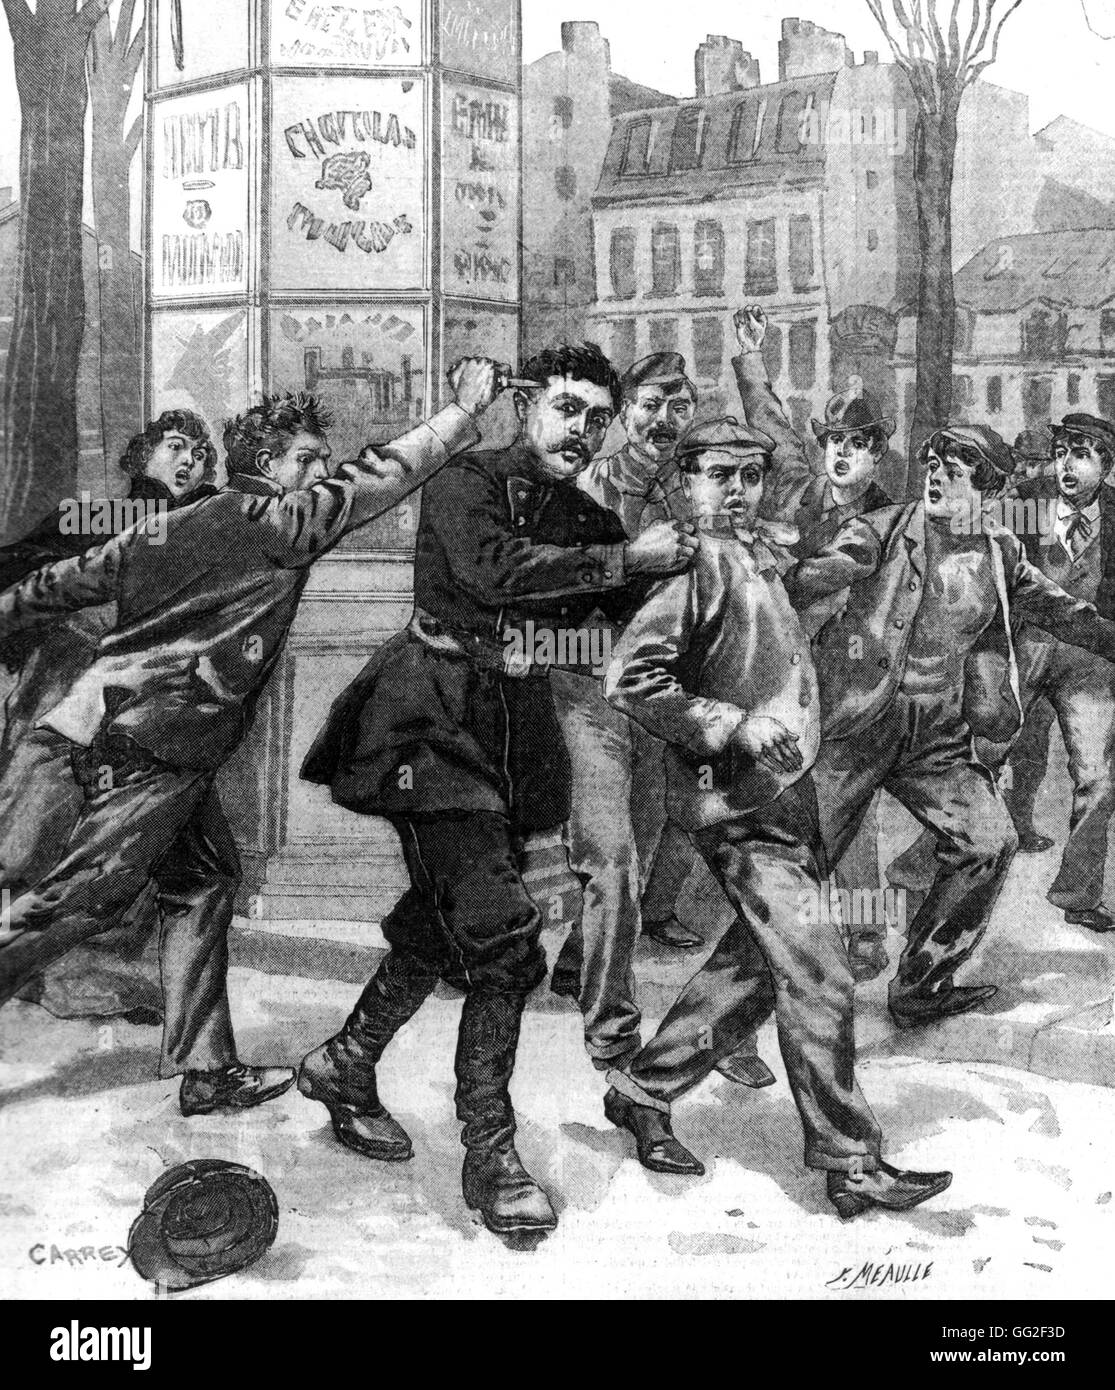 Atentado anarquista. El asesinato de un policía en 1900 Francia Foto de stock